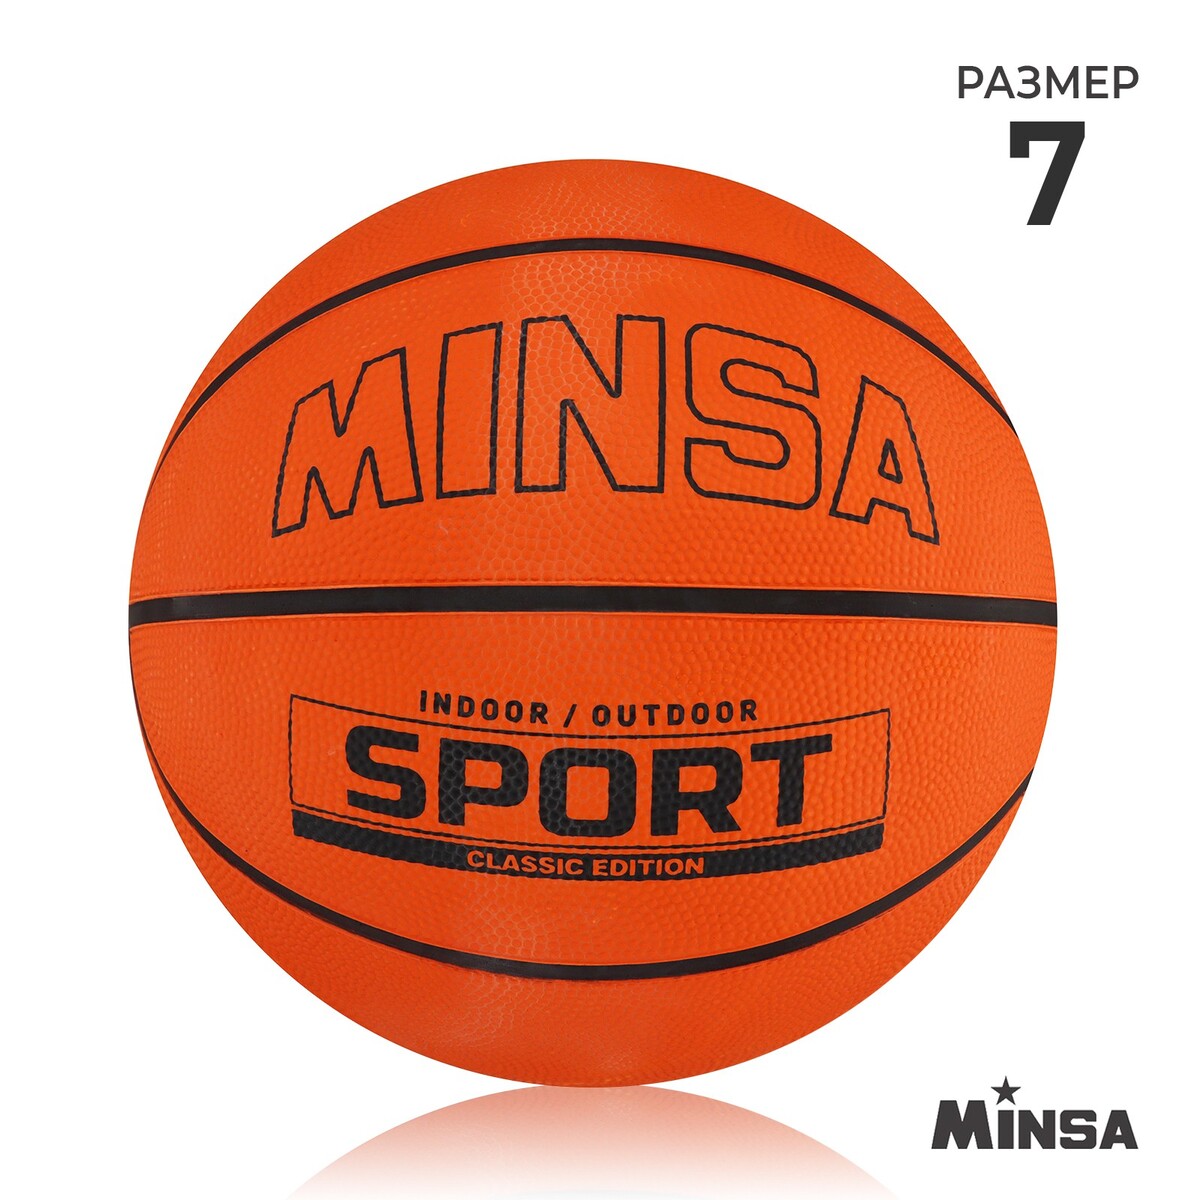 Мяч баскетбольный minsa sport, пвх, клееный, 8 панелей, р. 7 мяч баскетбольный minsa air power пвх клееный 8 панелей р 7